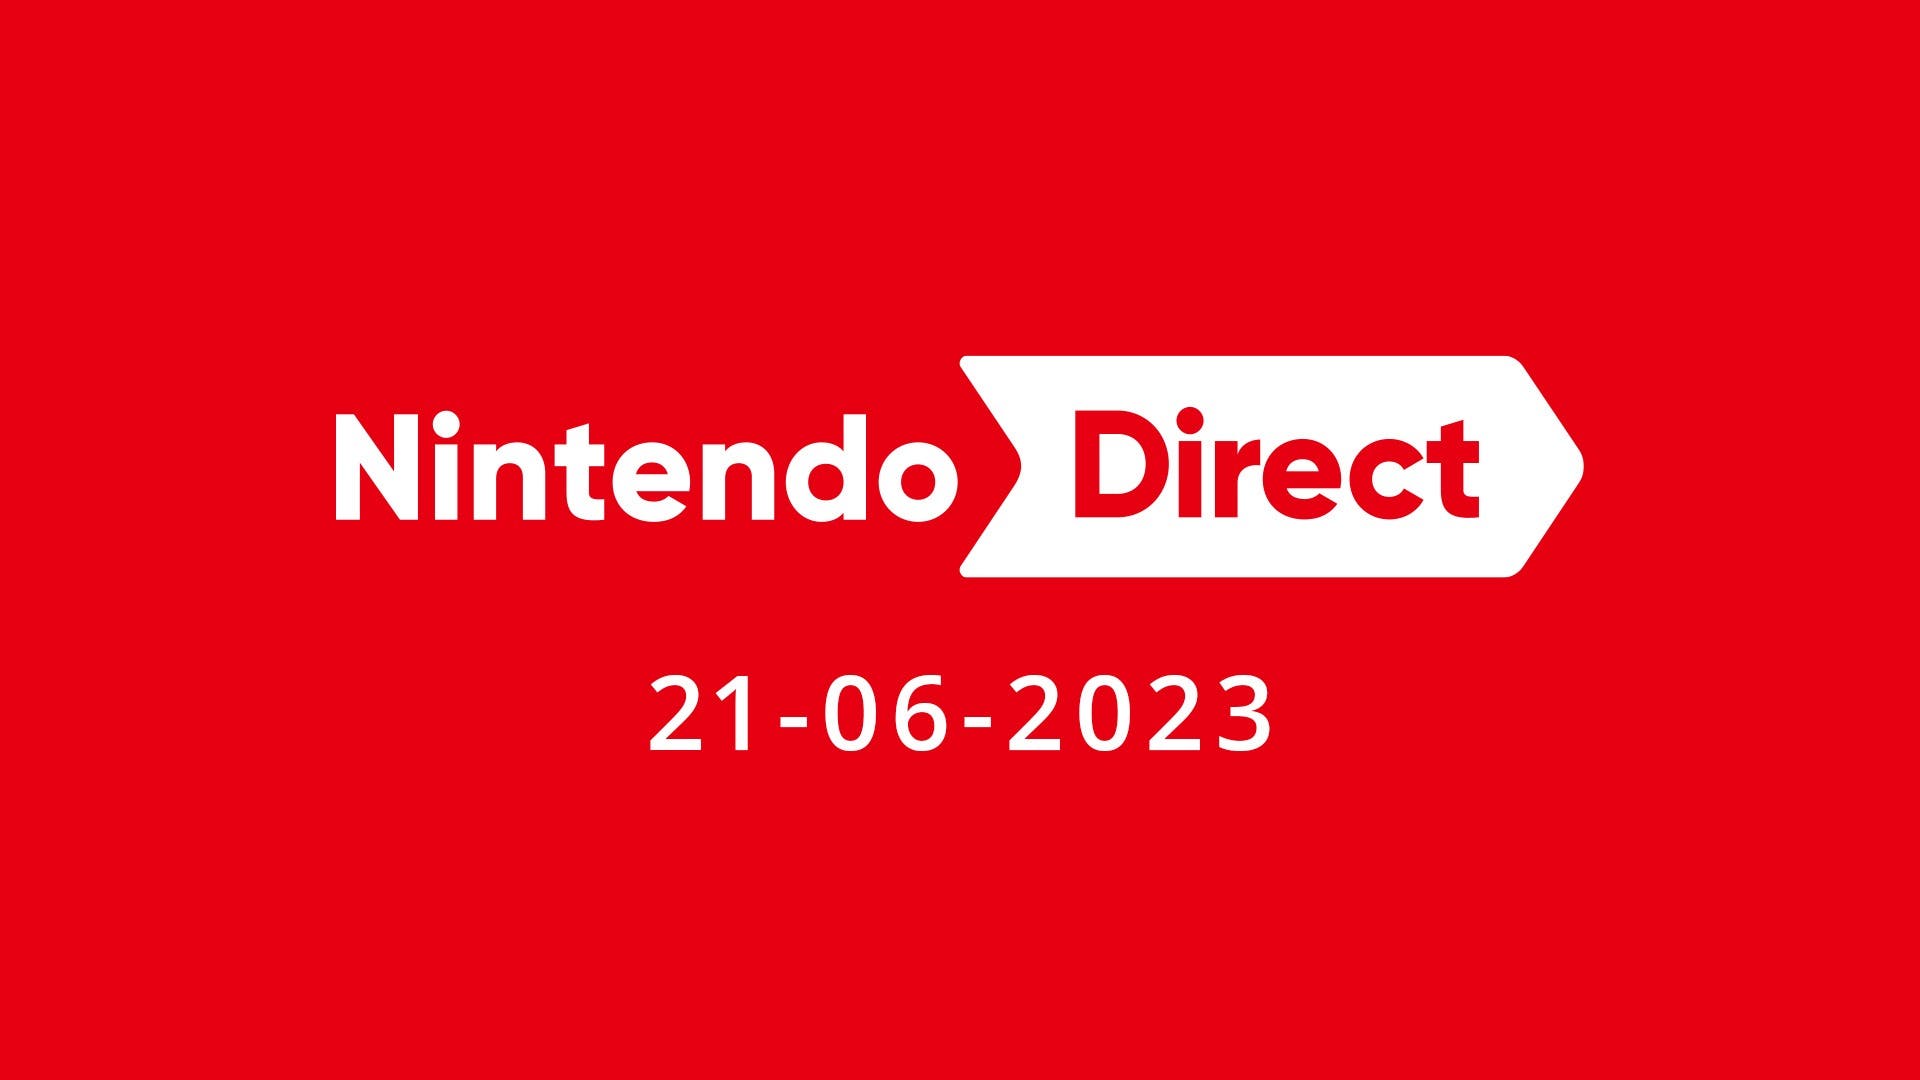 Análisis revela los anuncios más comentados del pasado Nintendo Direct